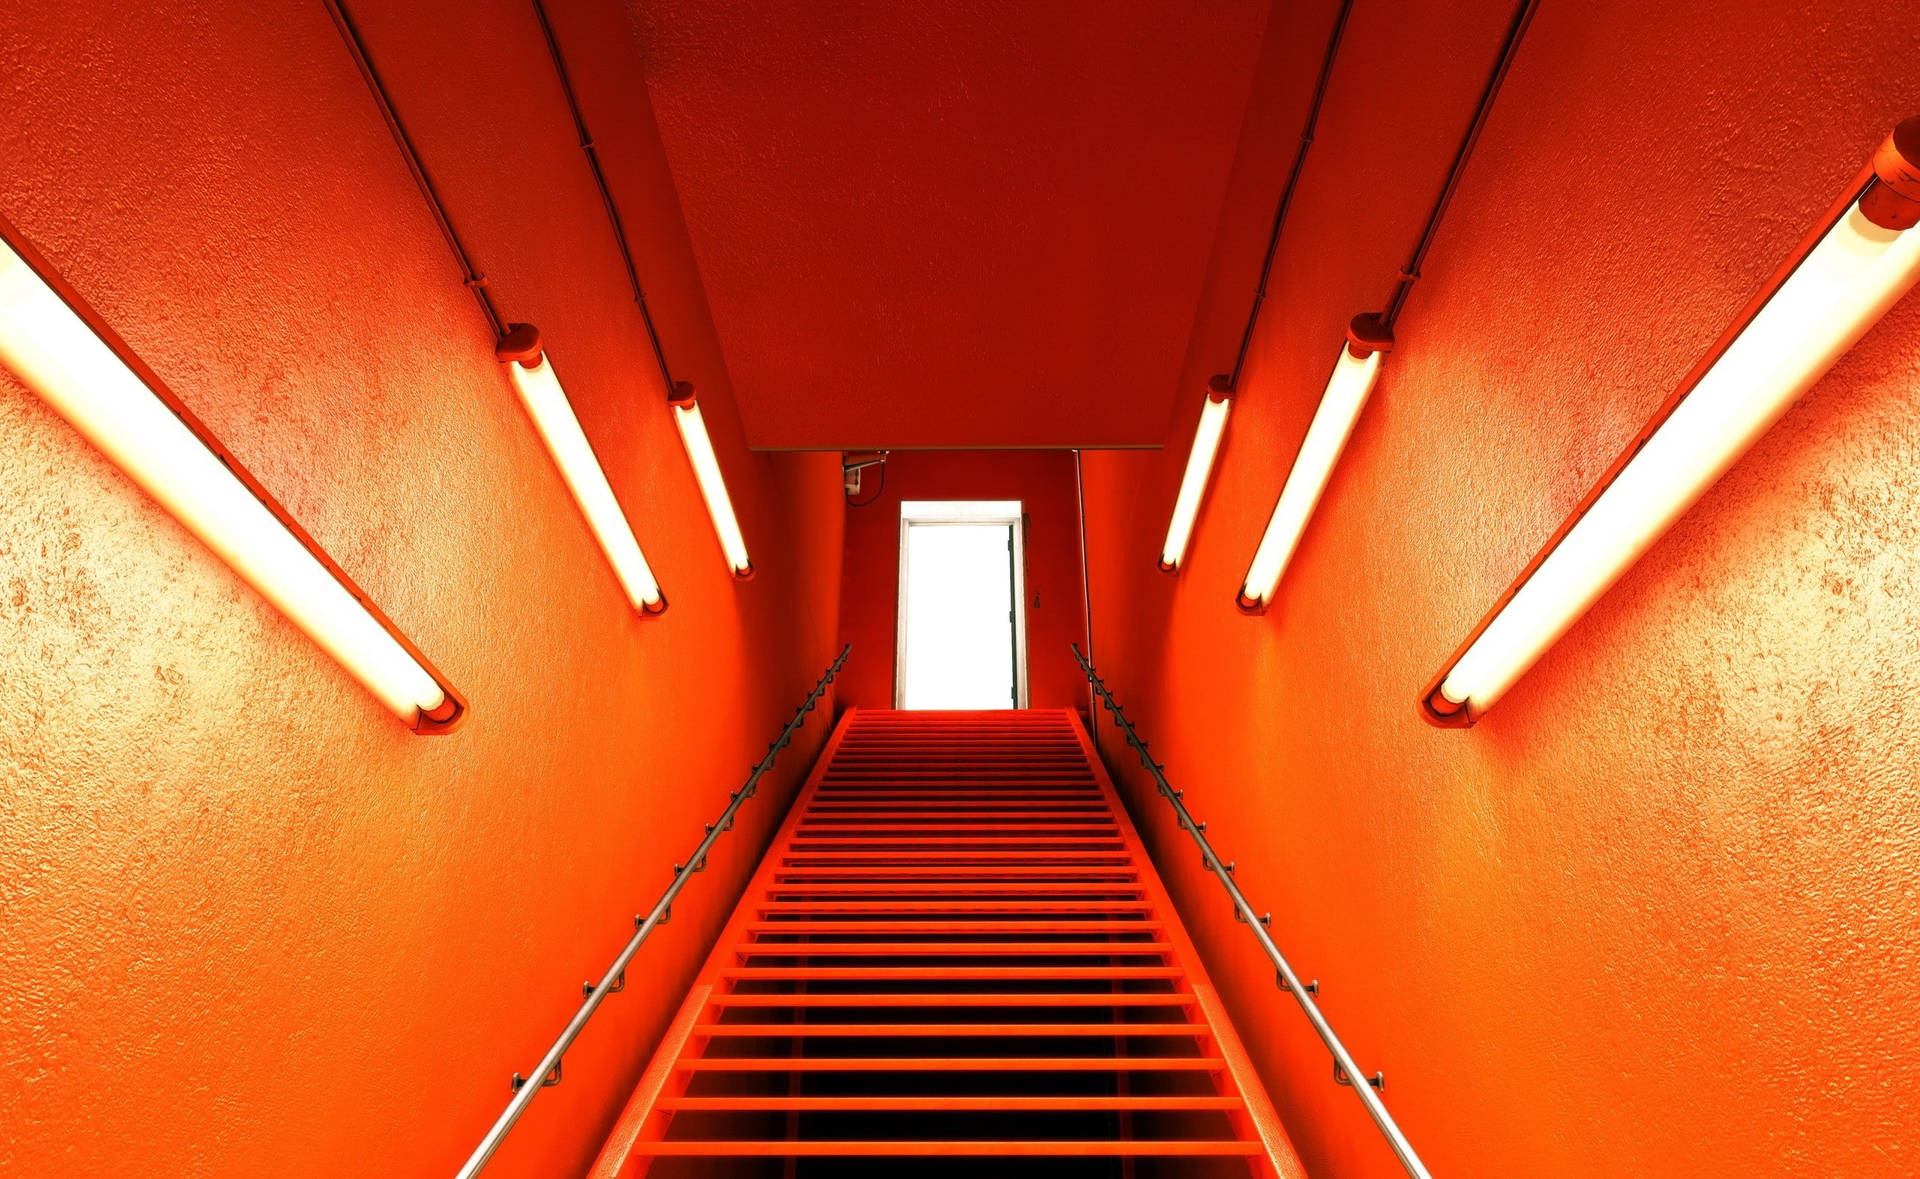 Imagens Estéticas De Neon Orange